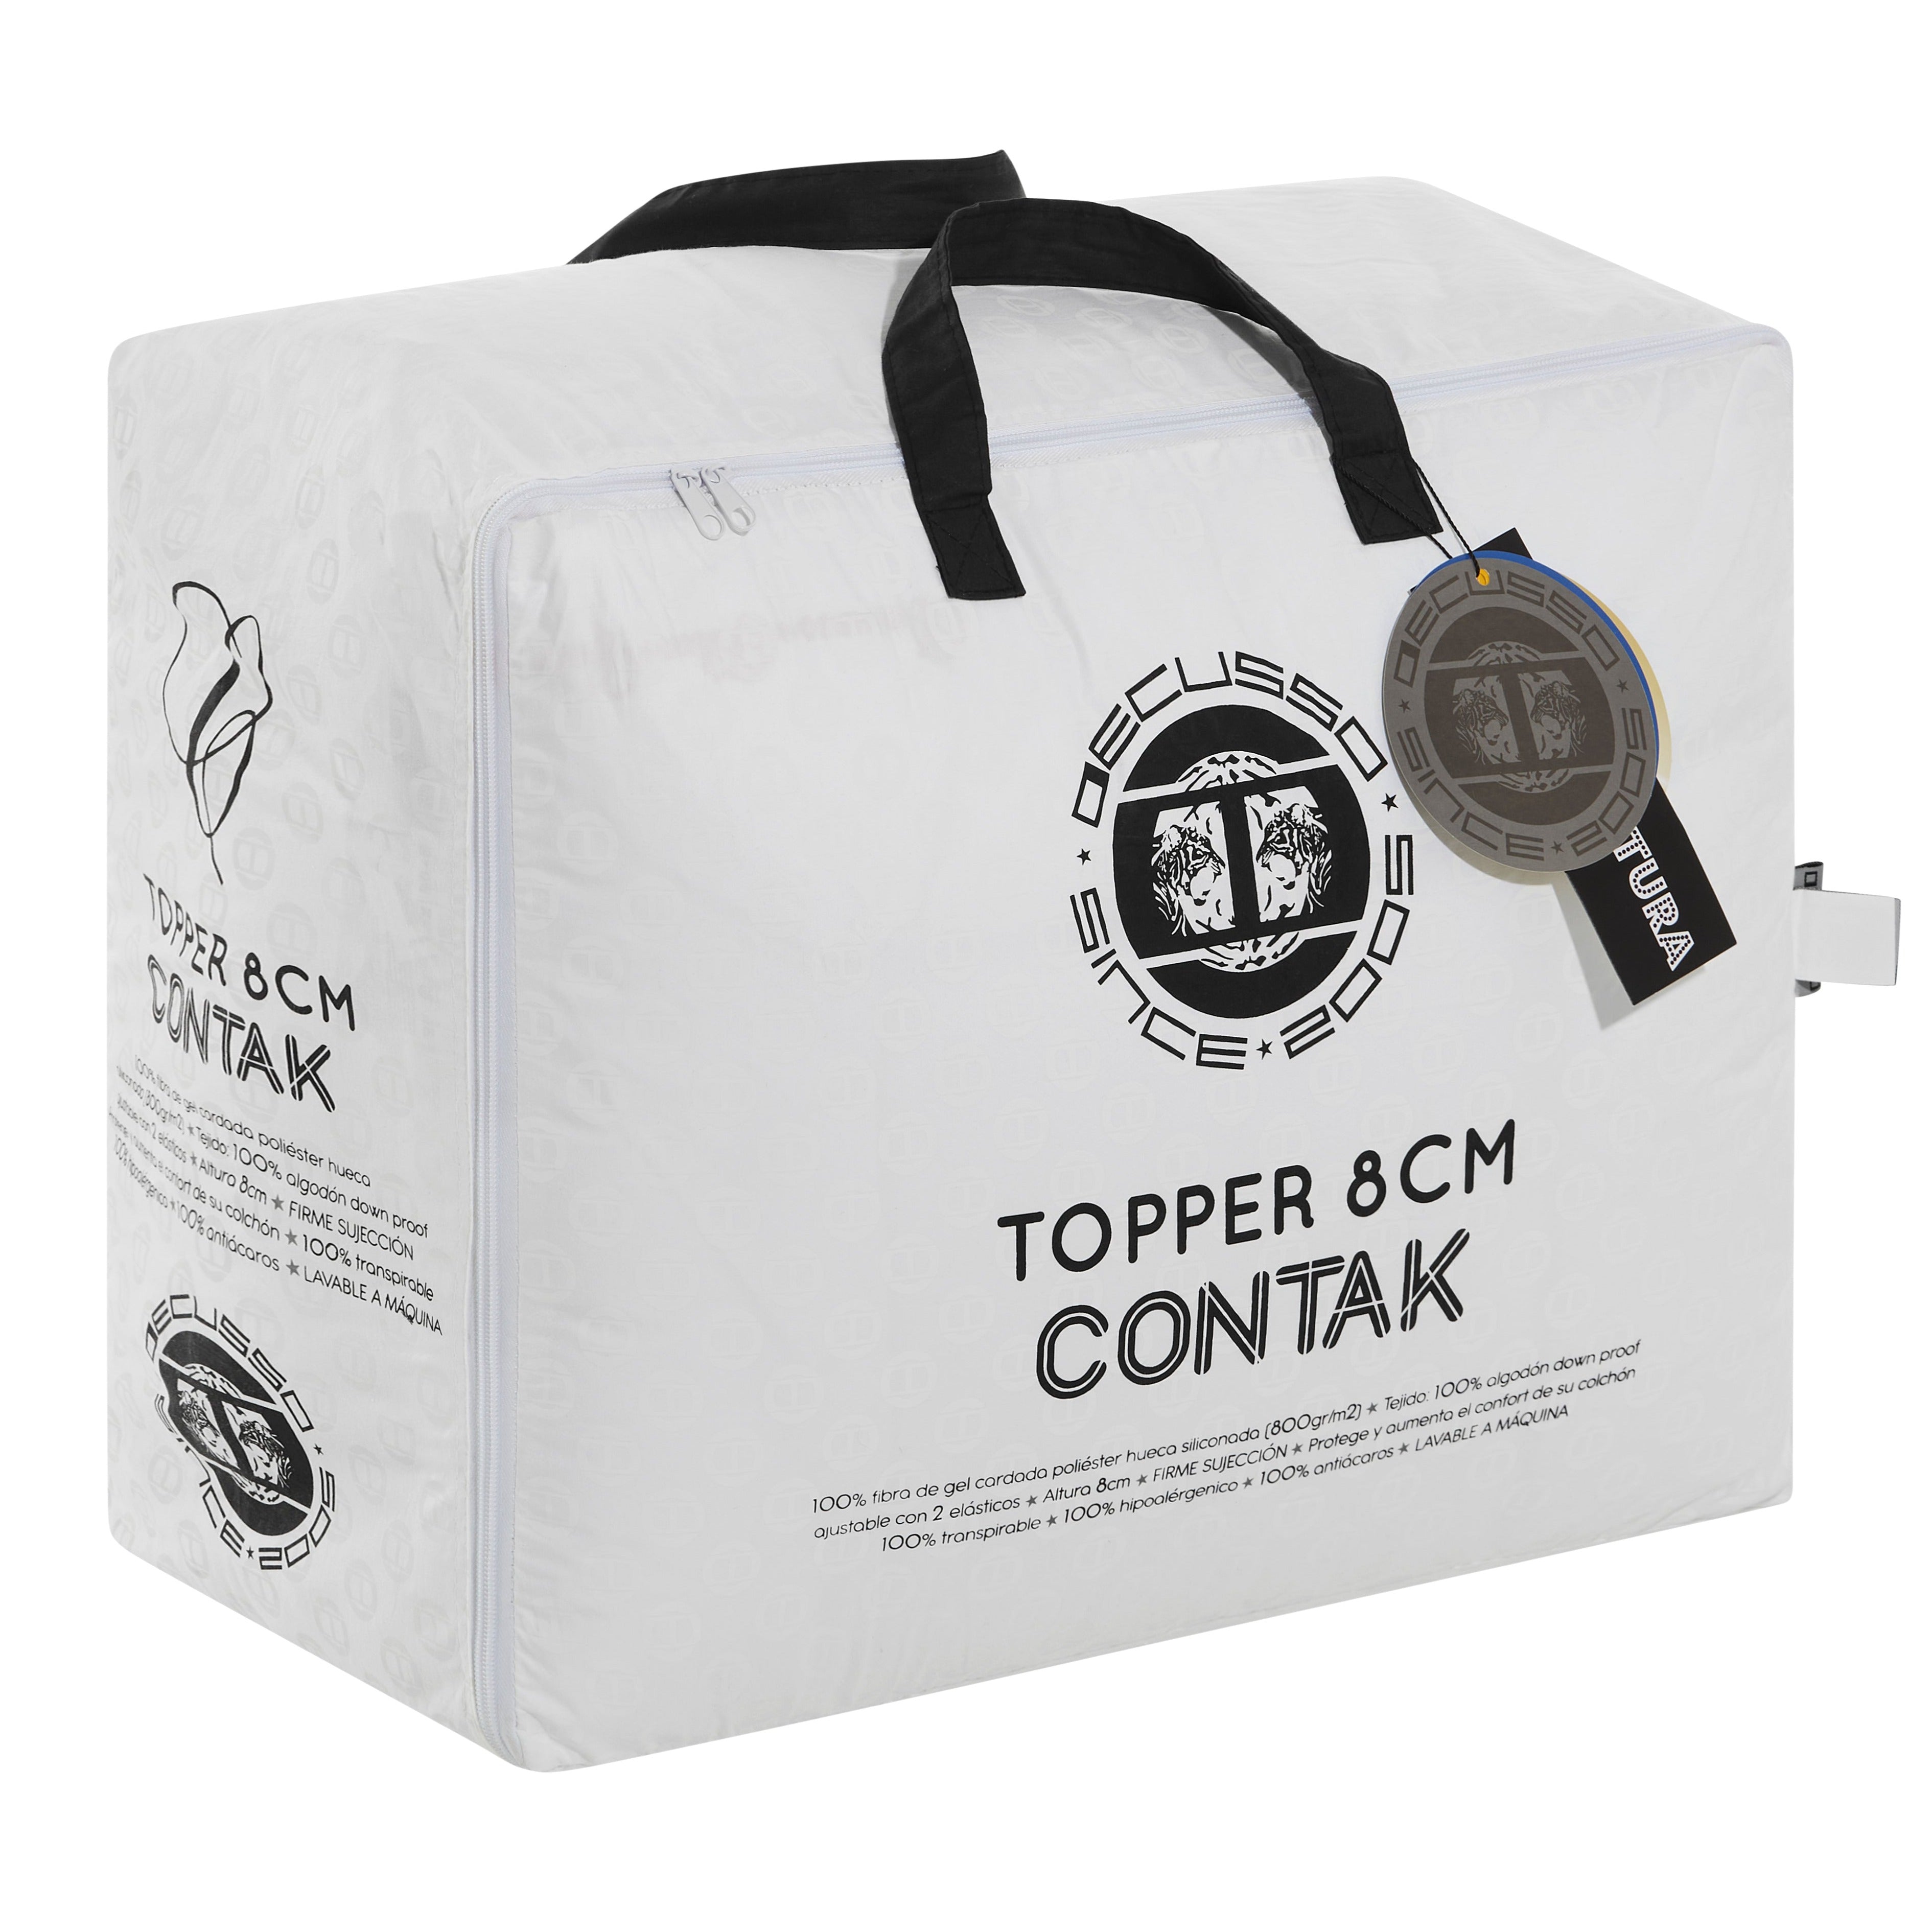 Topper Contak para Colchón - Confort y Protección Hipoalergénica